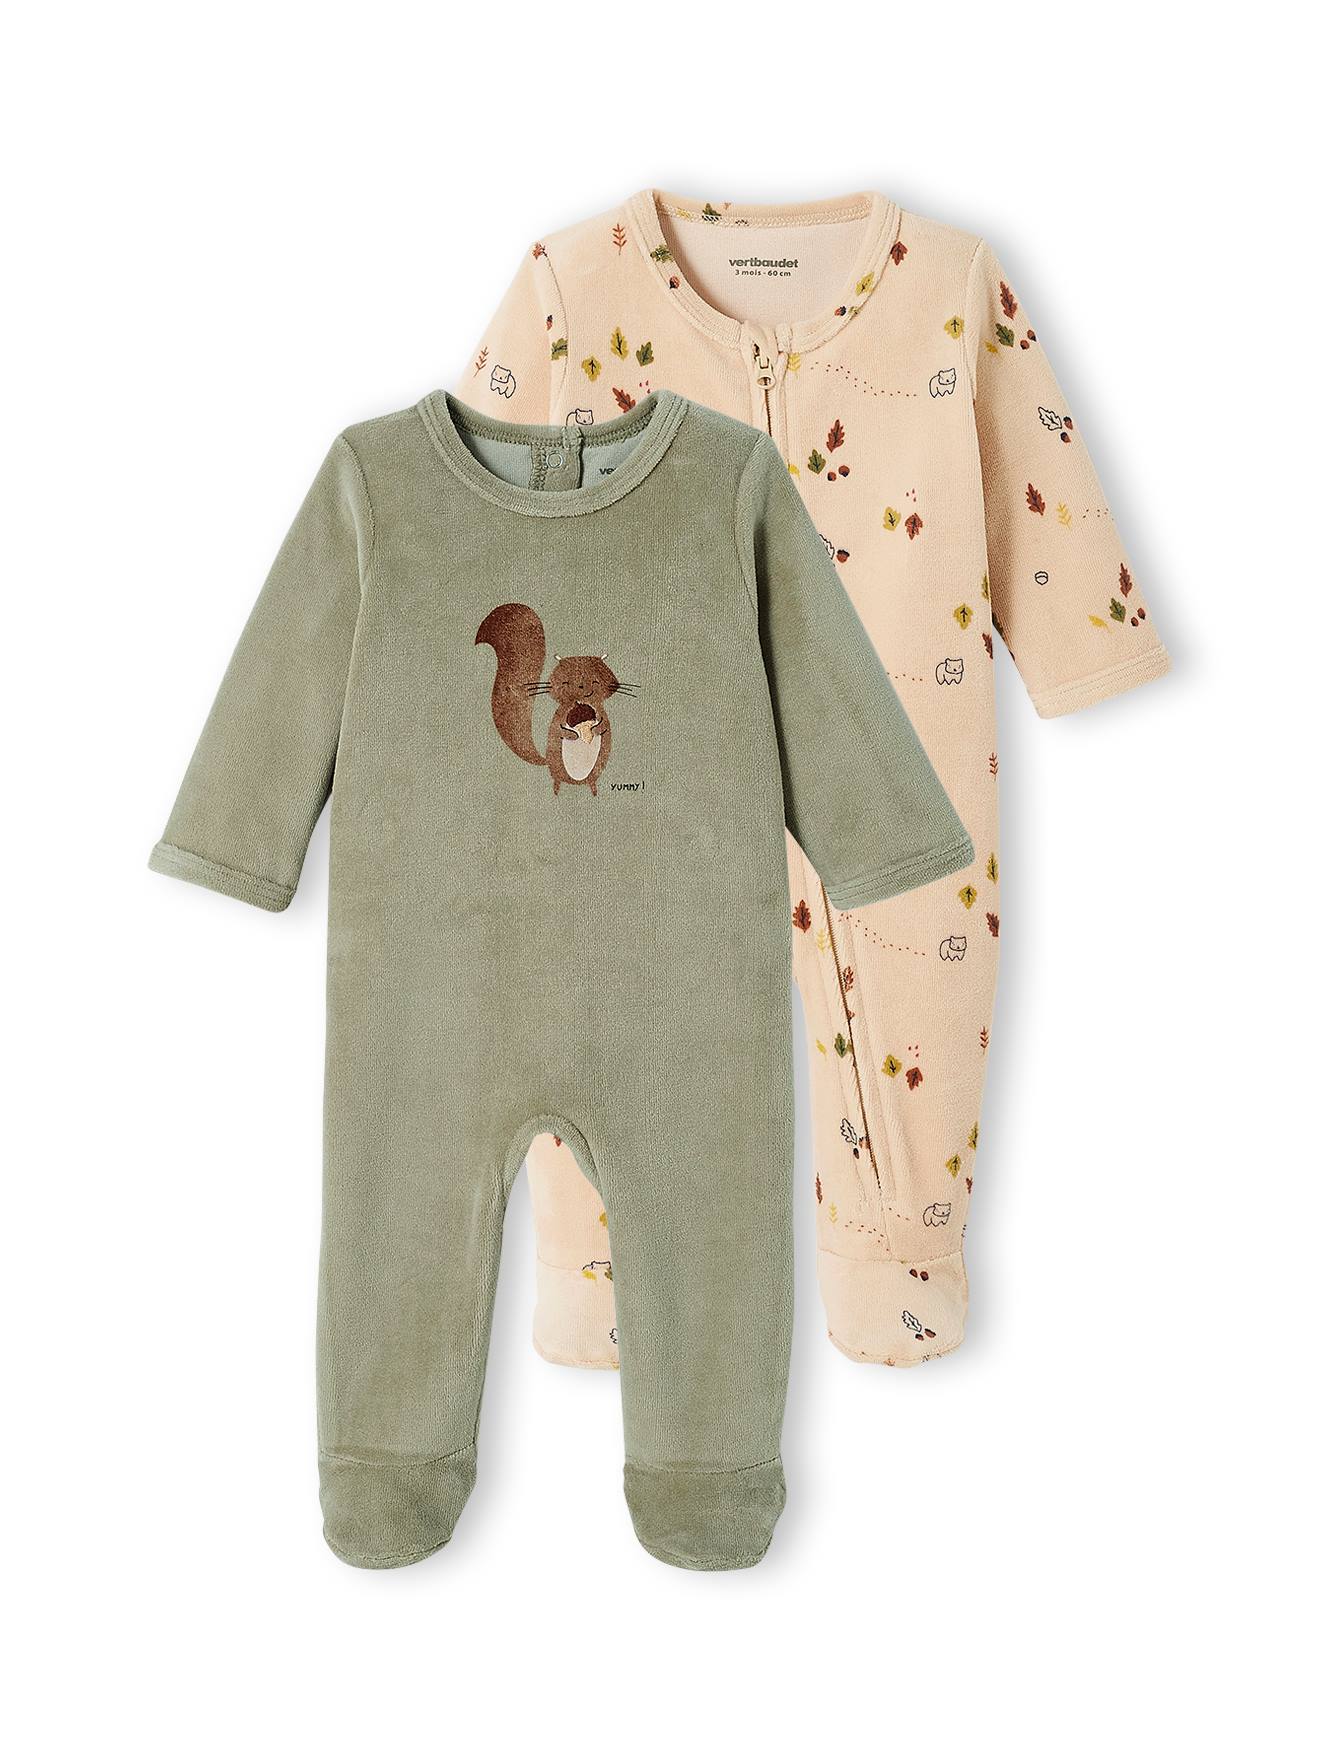 mit Perfekt für Geschenk 6-9 Monate Baby Schlafstrampler 3er Pack Unisex Pyjamas Baumwolle Strampler Langarm Overalls für Jungen Mädchen 